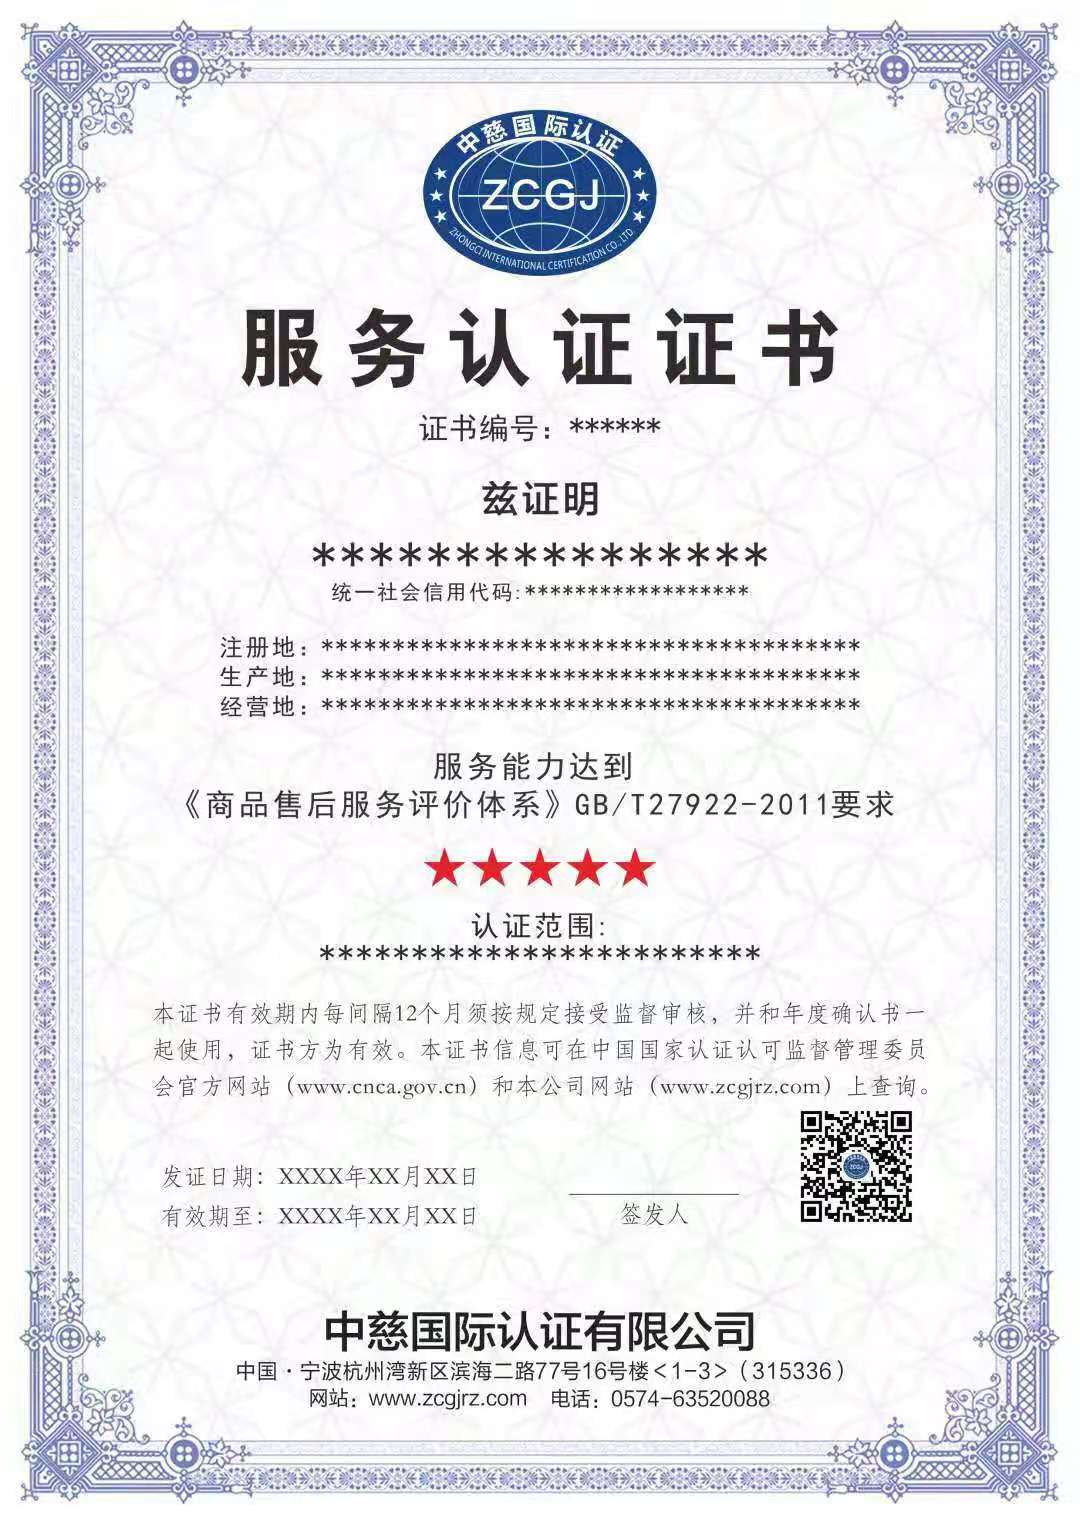 宁波江北军国标申请GB/T50430认证ISO9001认证 通过初始环境状况评估 办理流程